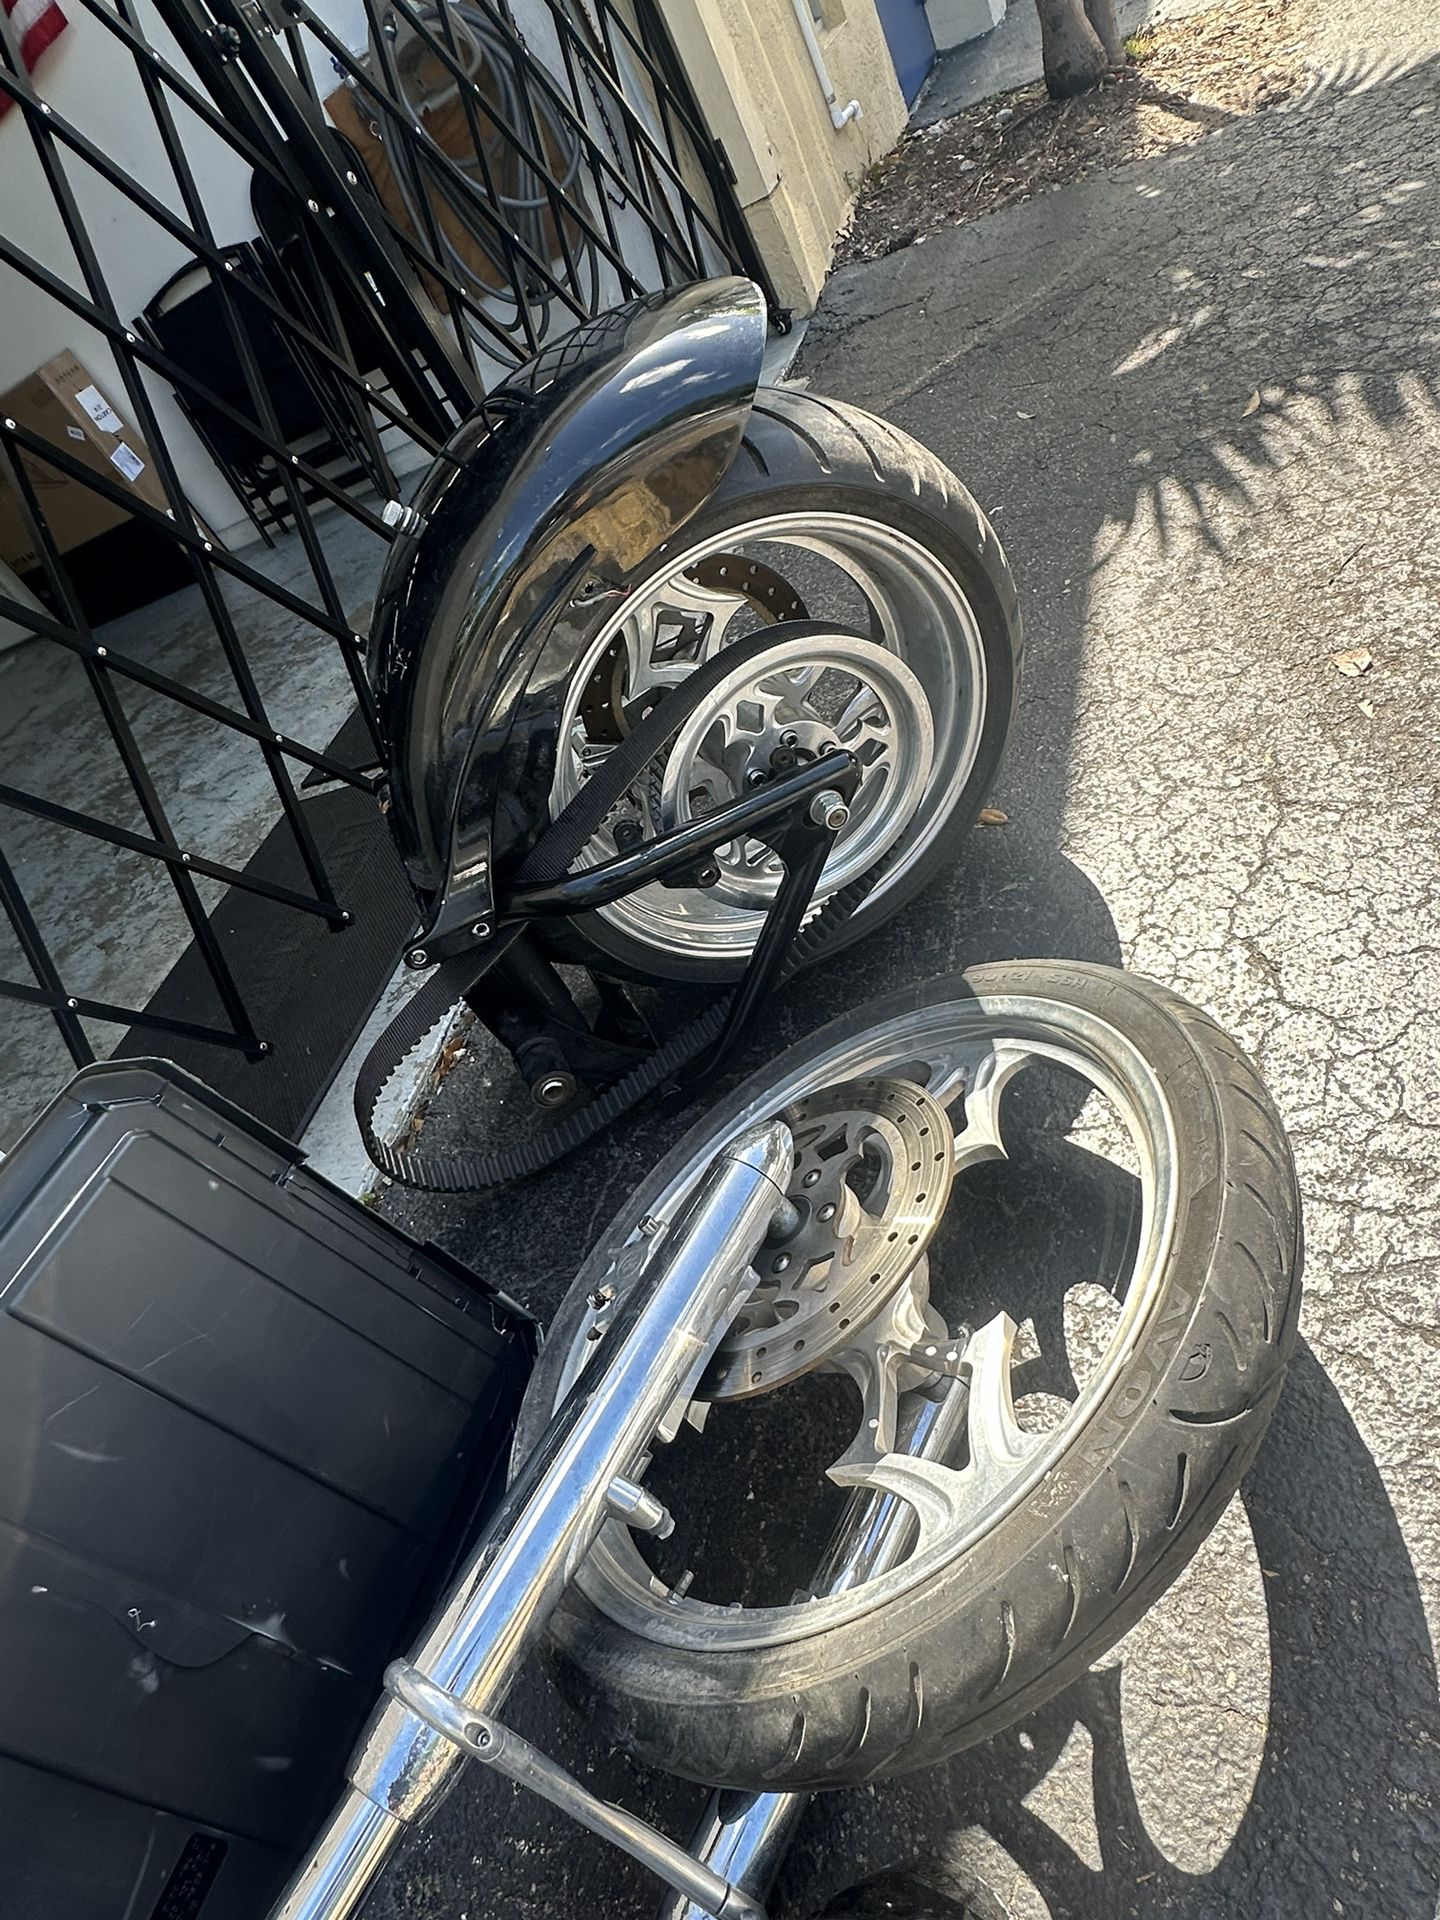 Big Dog Motorcycle Rim Set and Parts